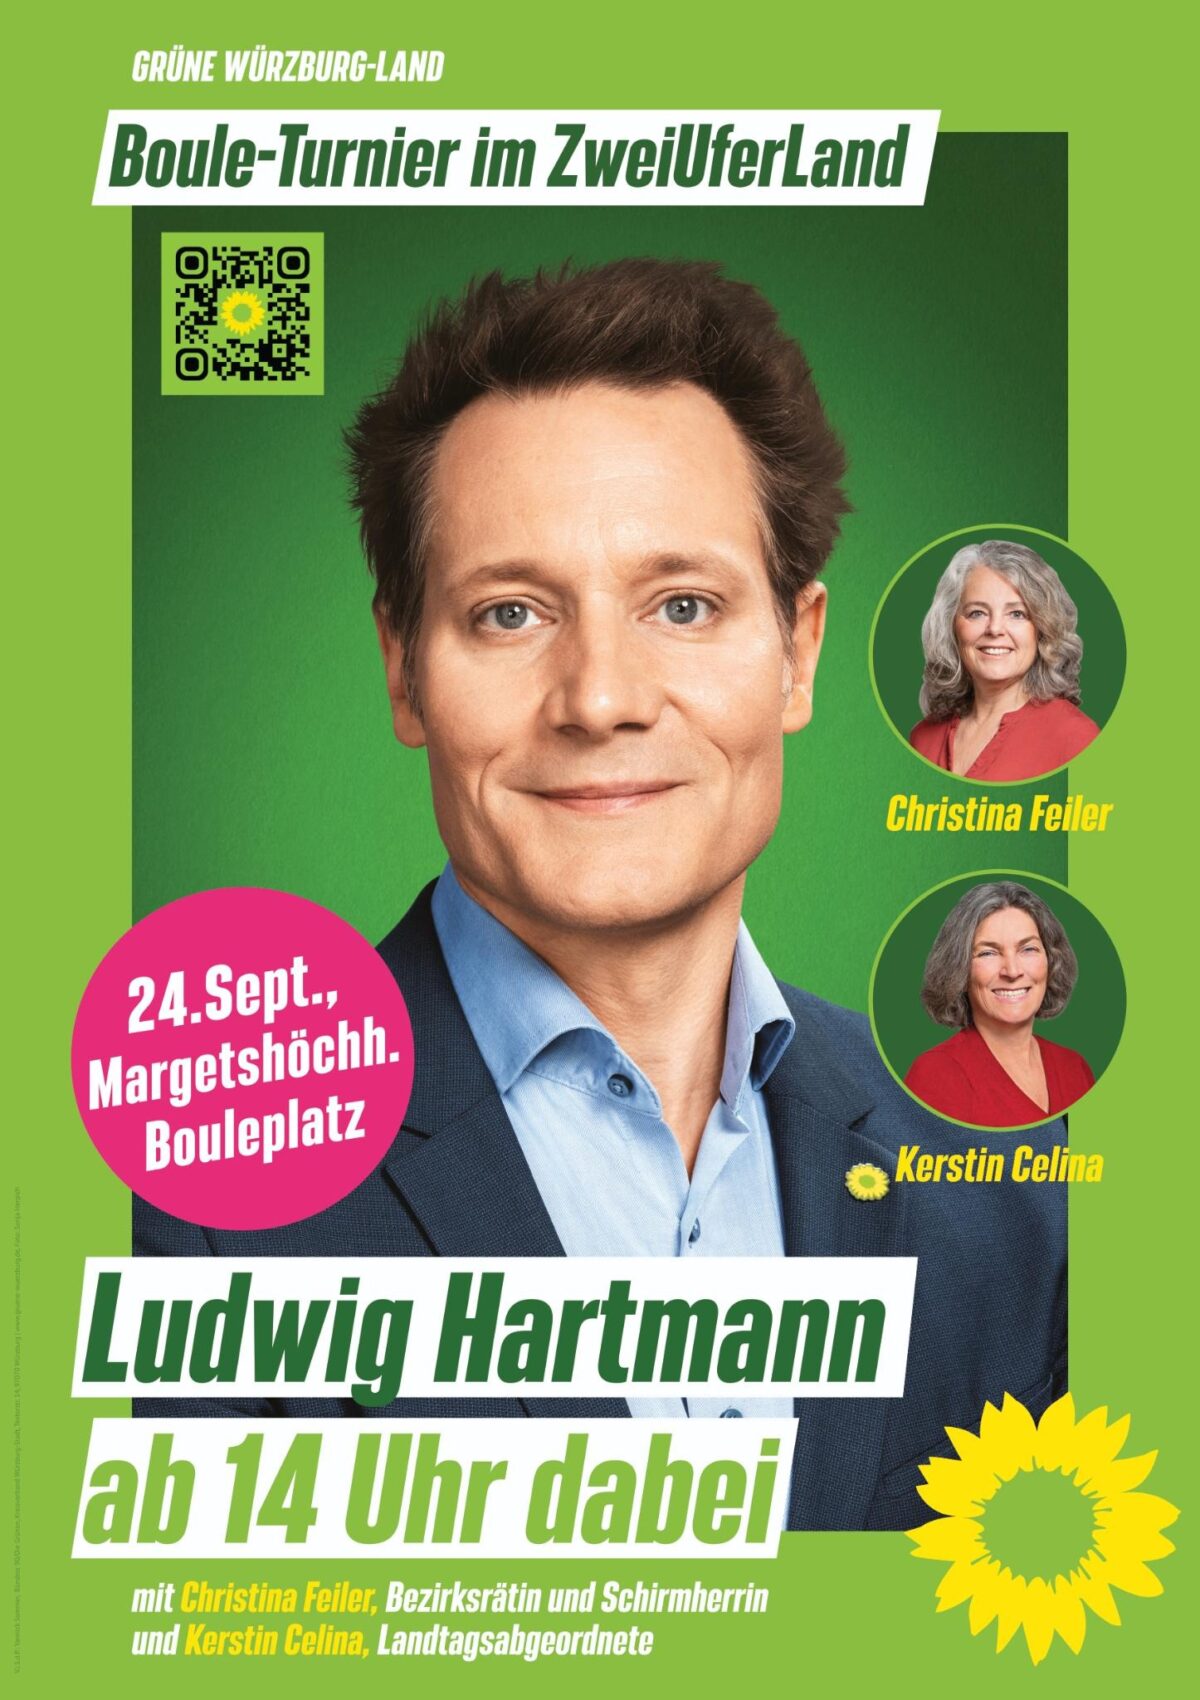 Plakat für das Bouleturnier mit einem Profilfoto von Ludwig Hartmann und zwei kleineren Fotos rechts seitlich von Christina Feiler und Kerstin Celina.
